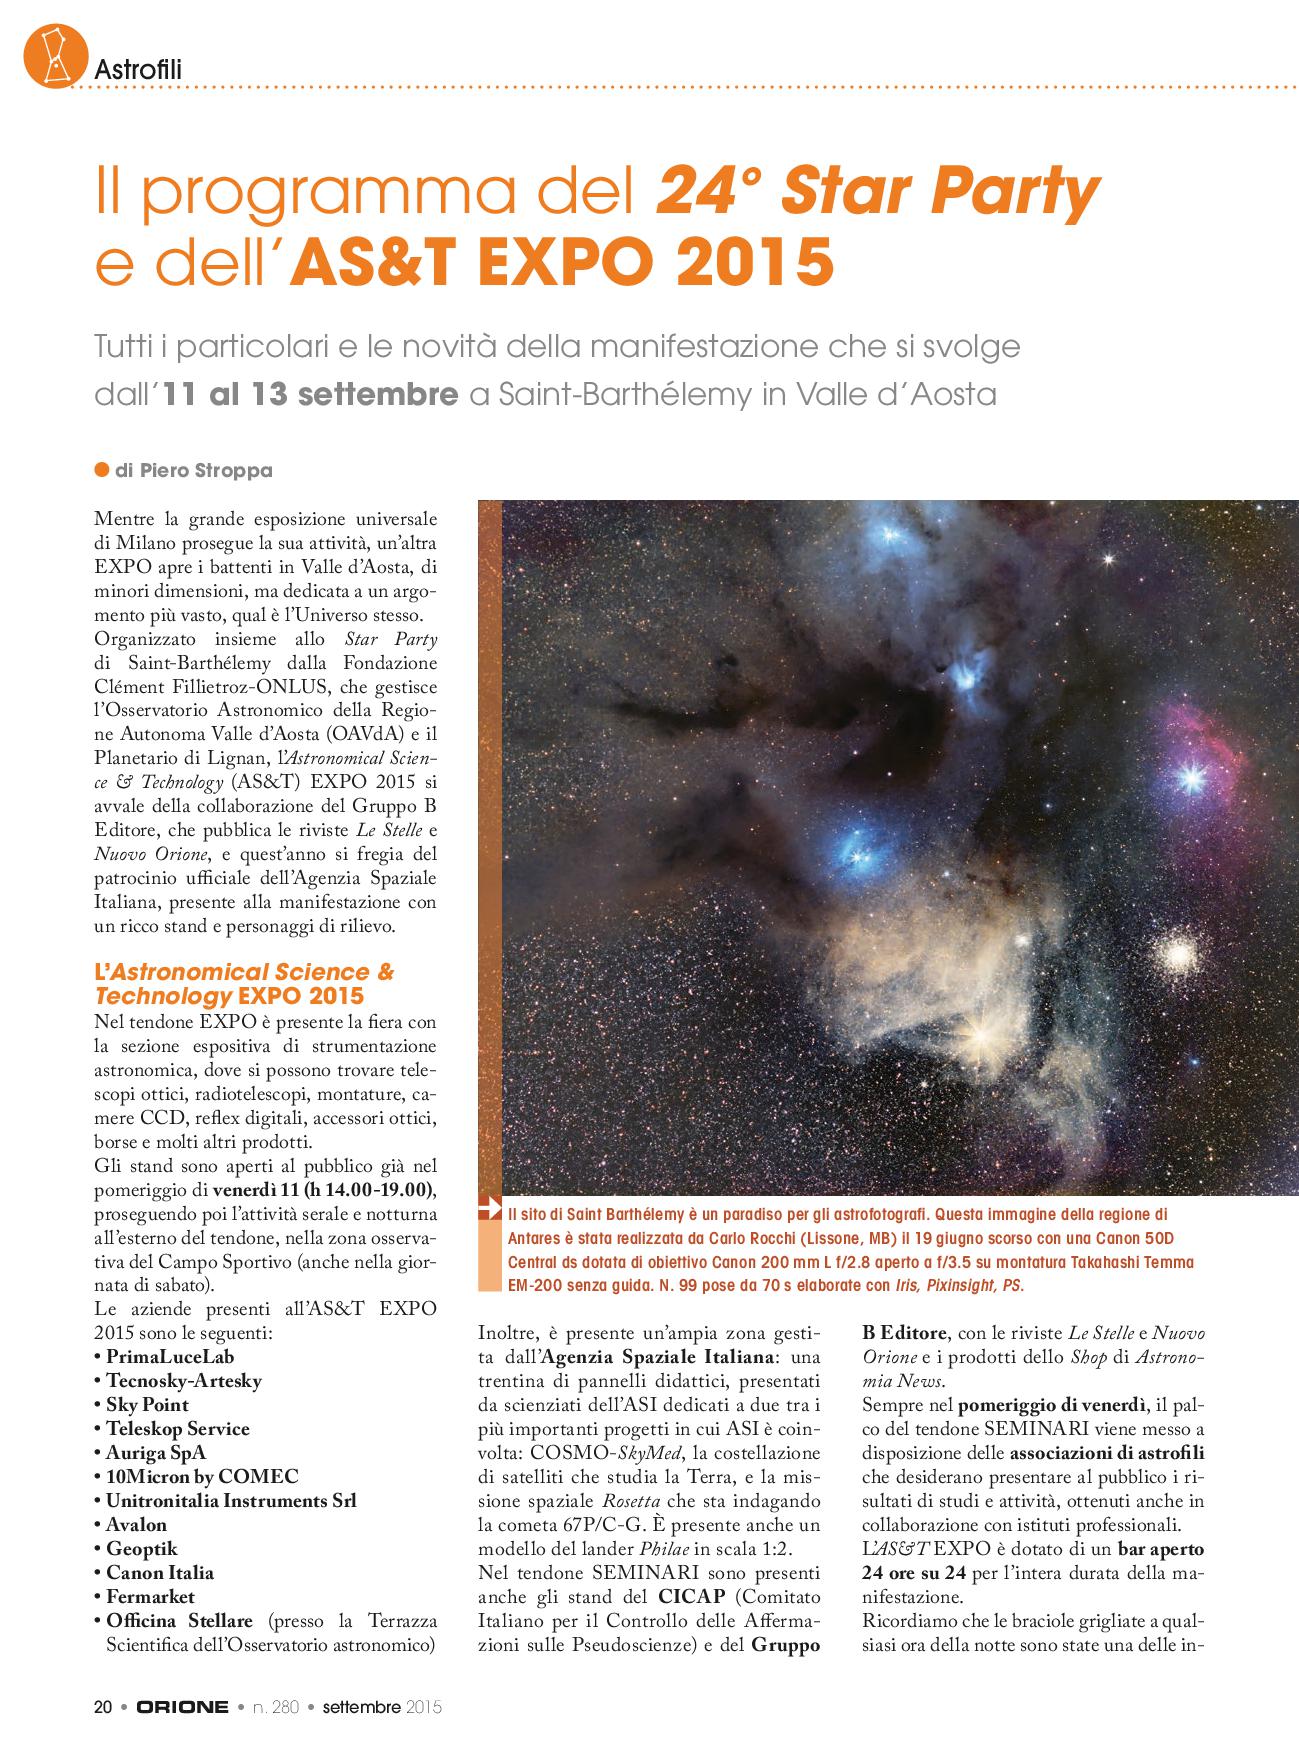 Astrofili: Il programma del 24° Star Party e dell’AS&T EXPO 2015